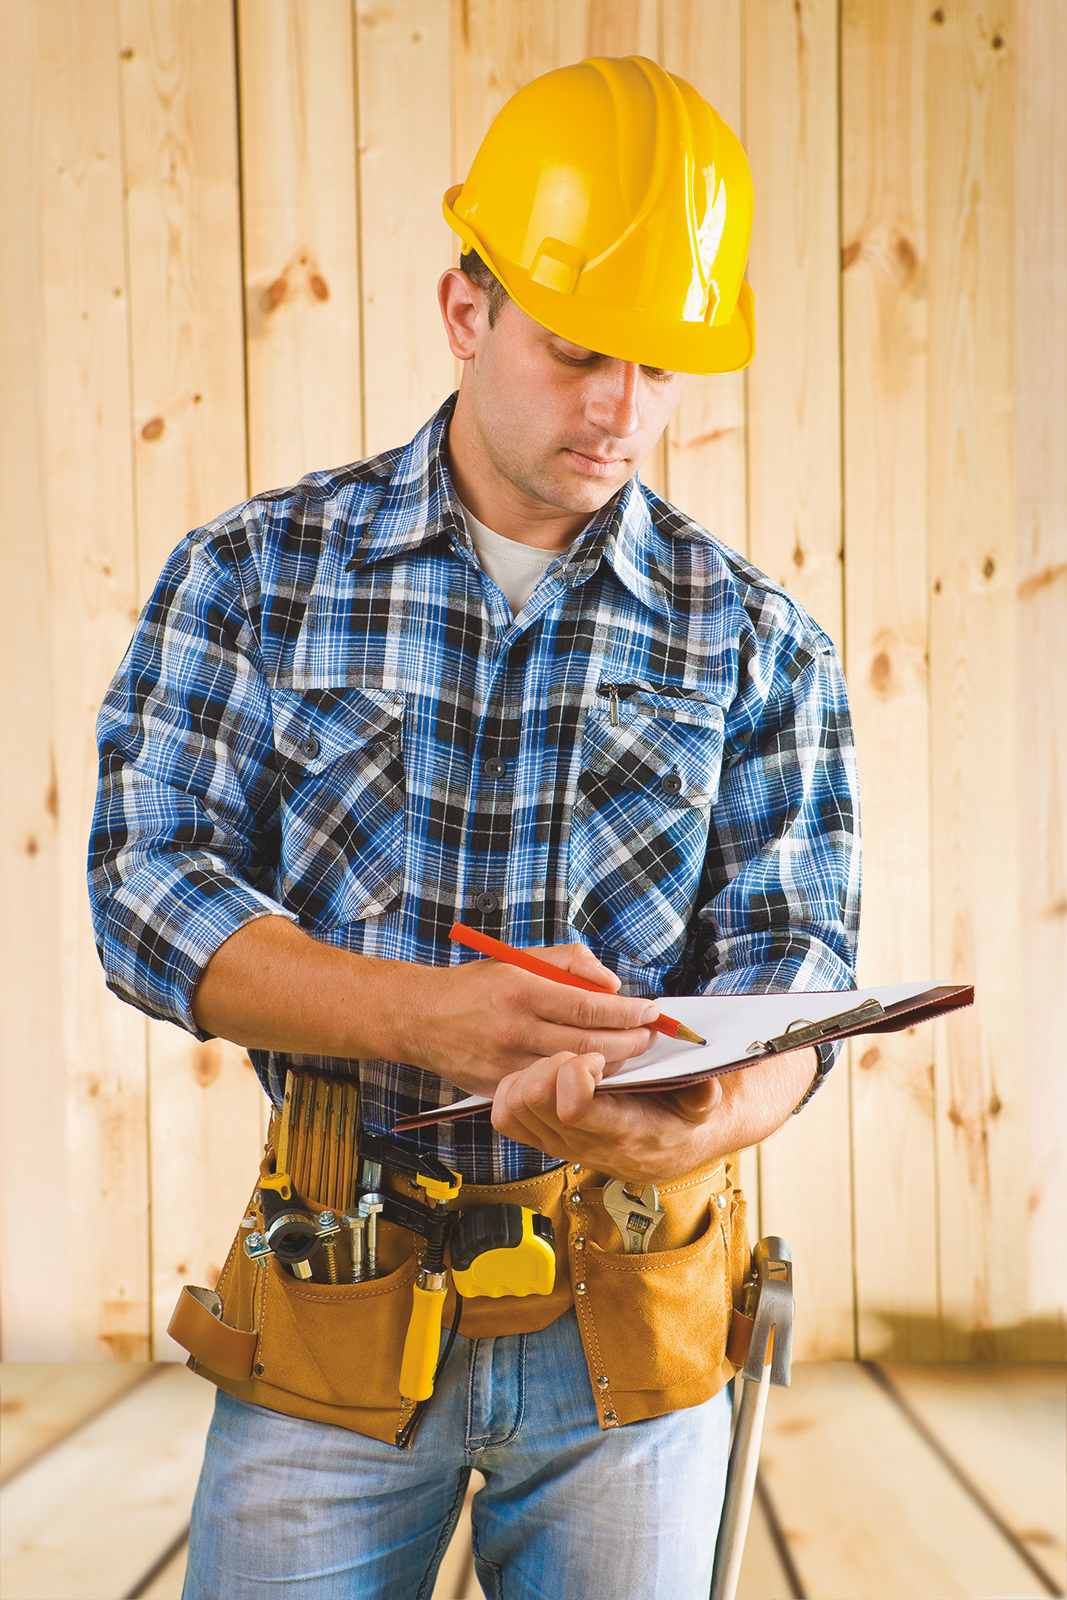 Quelles questions devriez-vous poser avant d’engager une entreprise de construction?